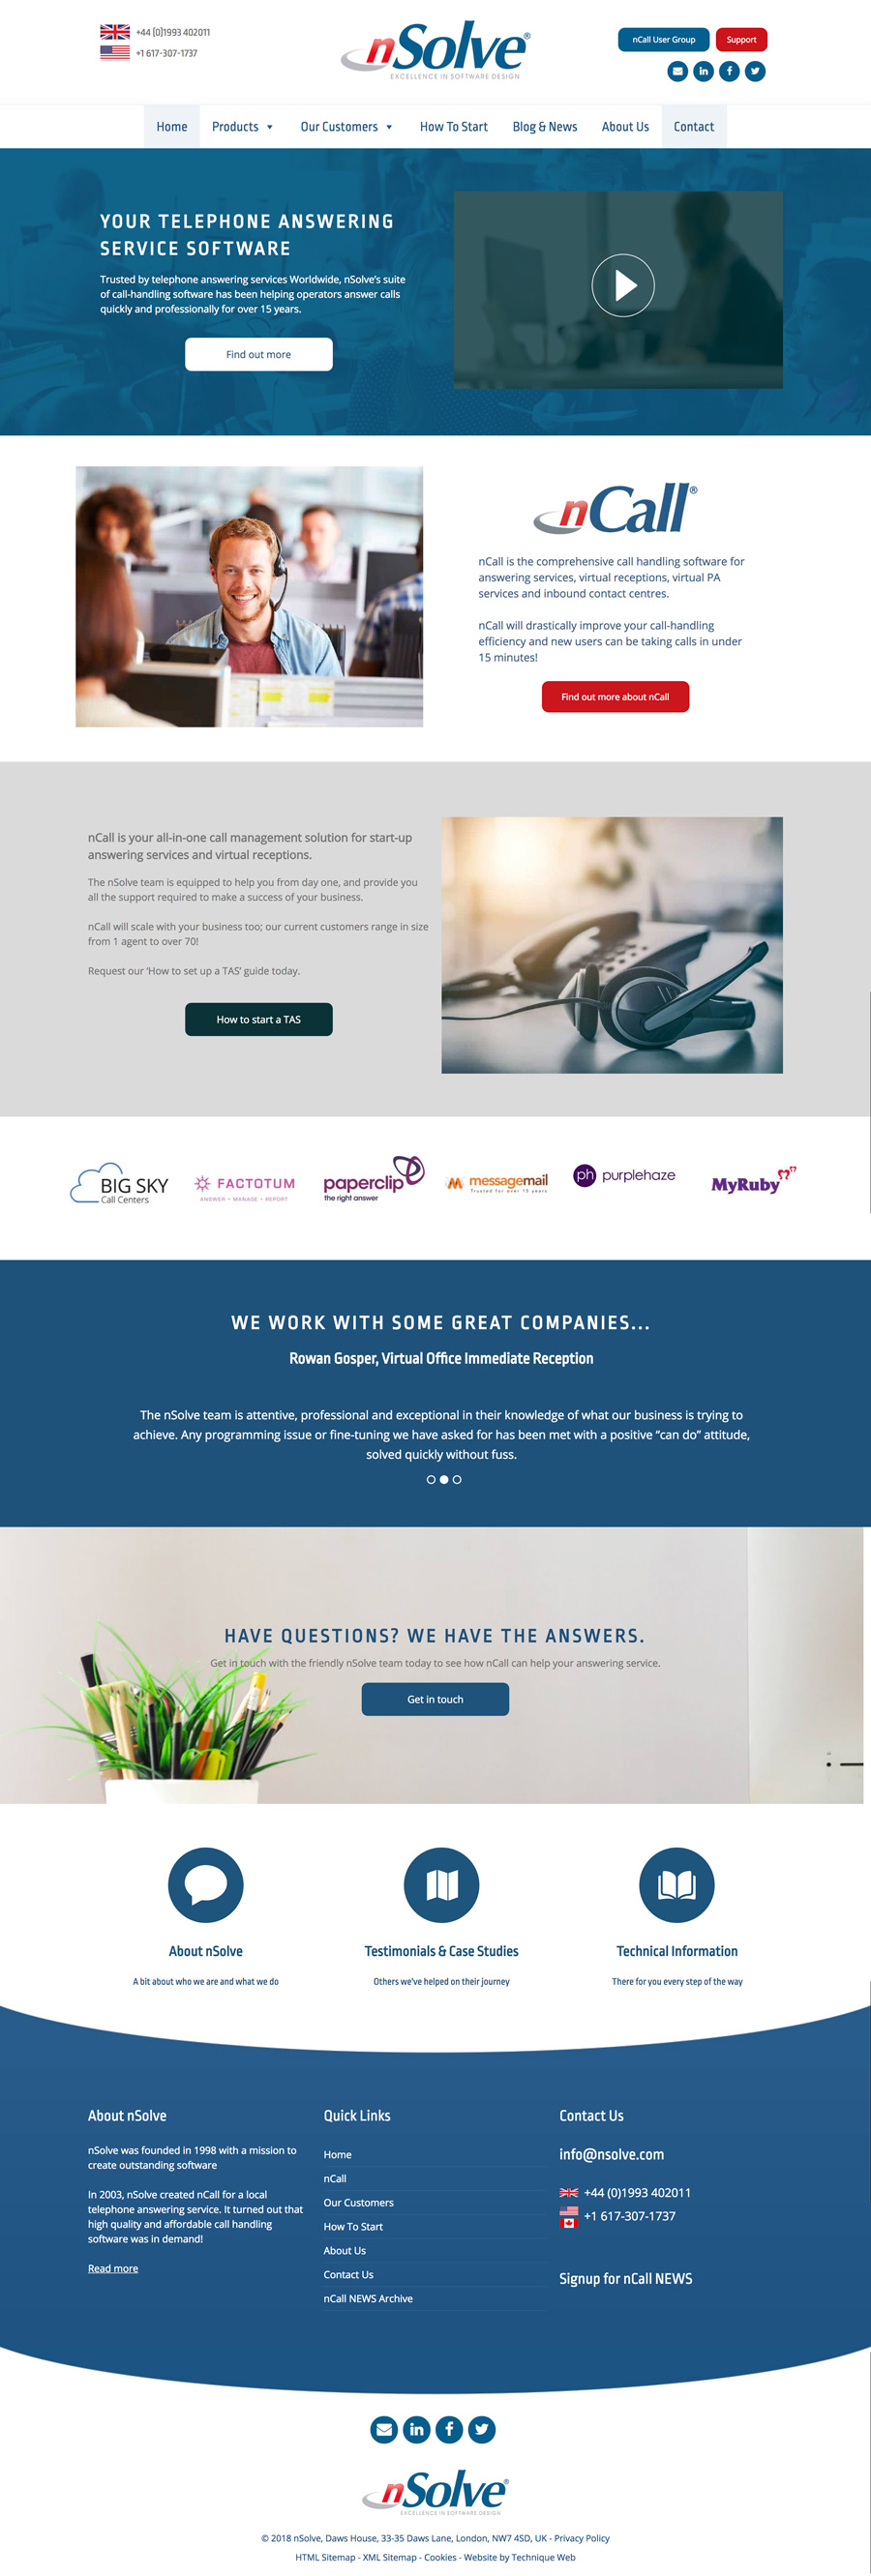 WordPress website design for Oxfordshire based nSolve